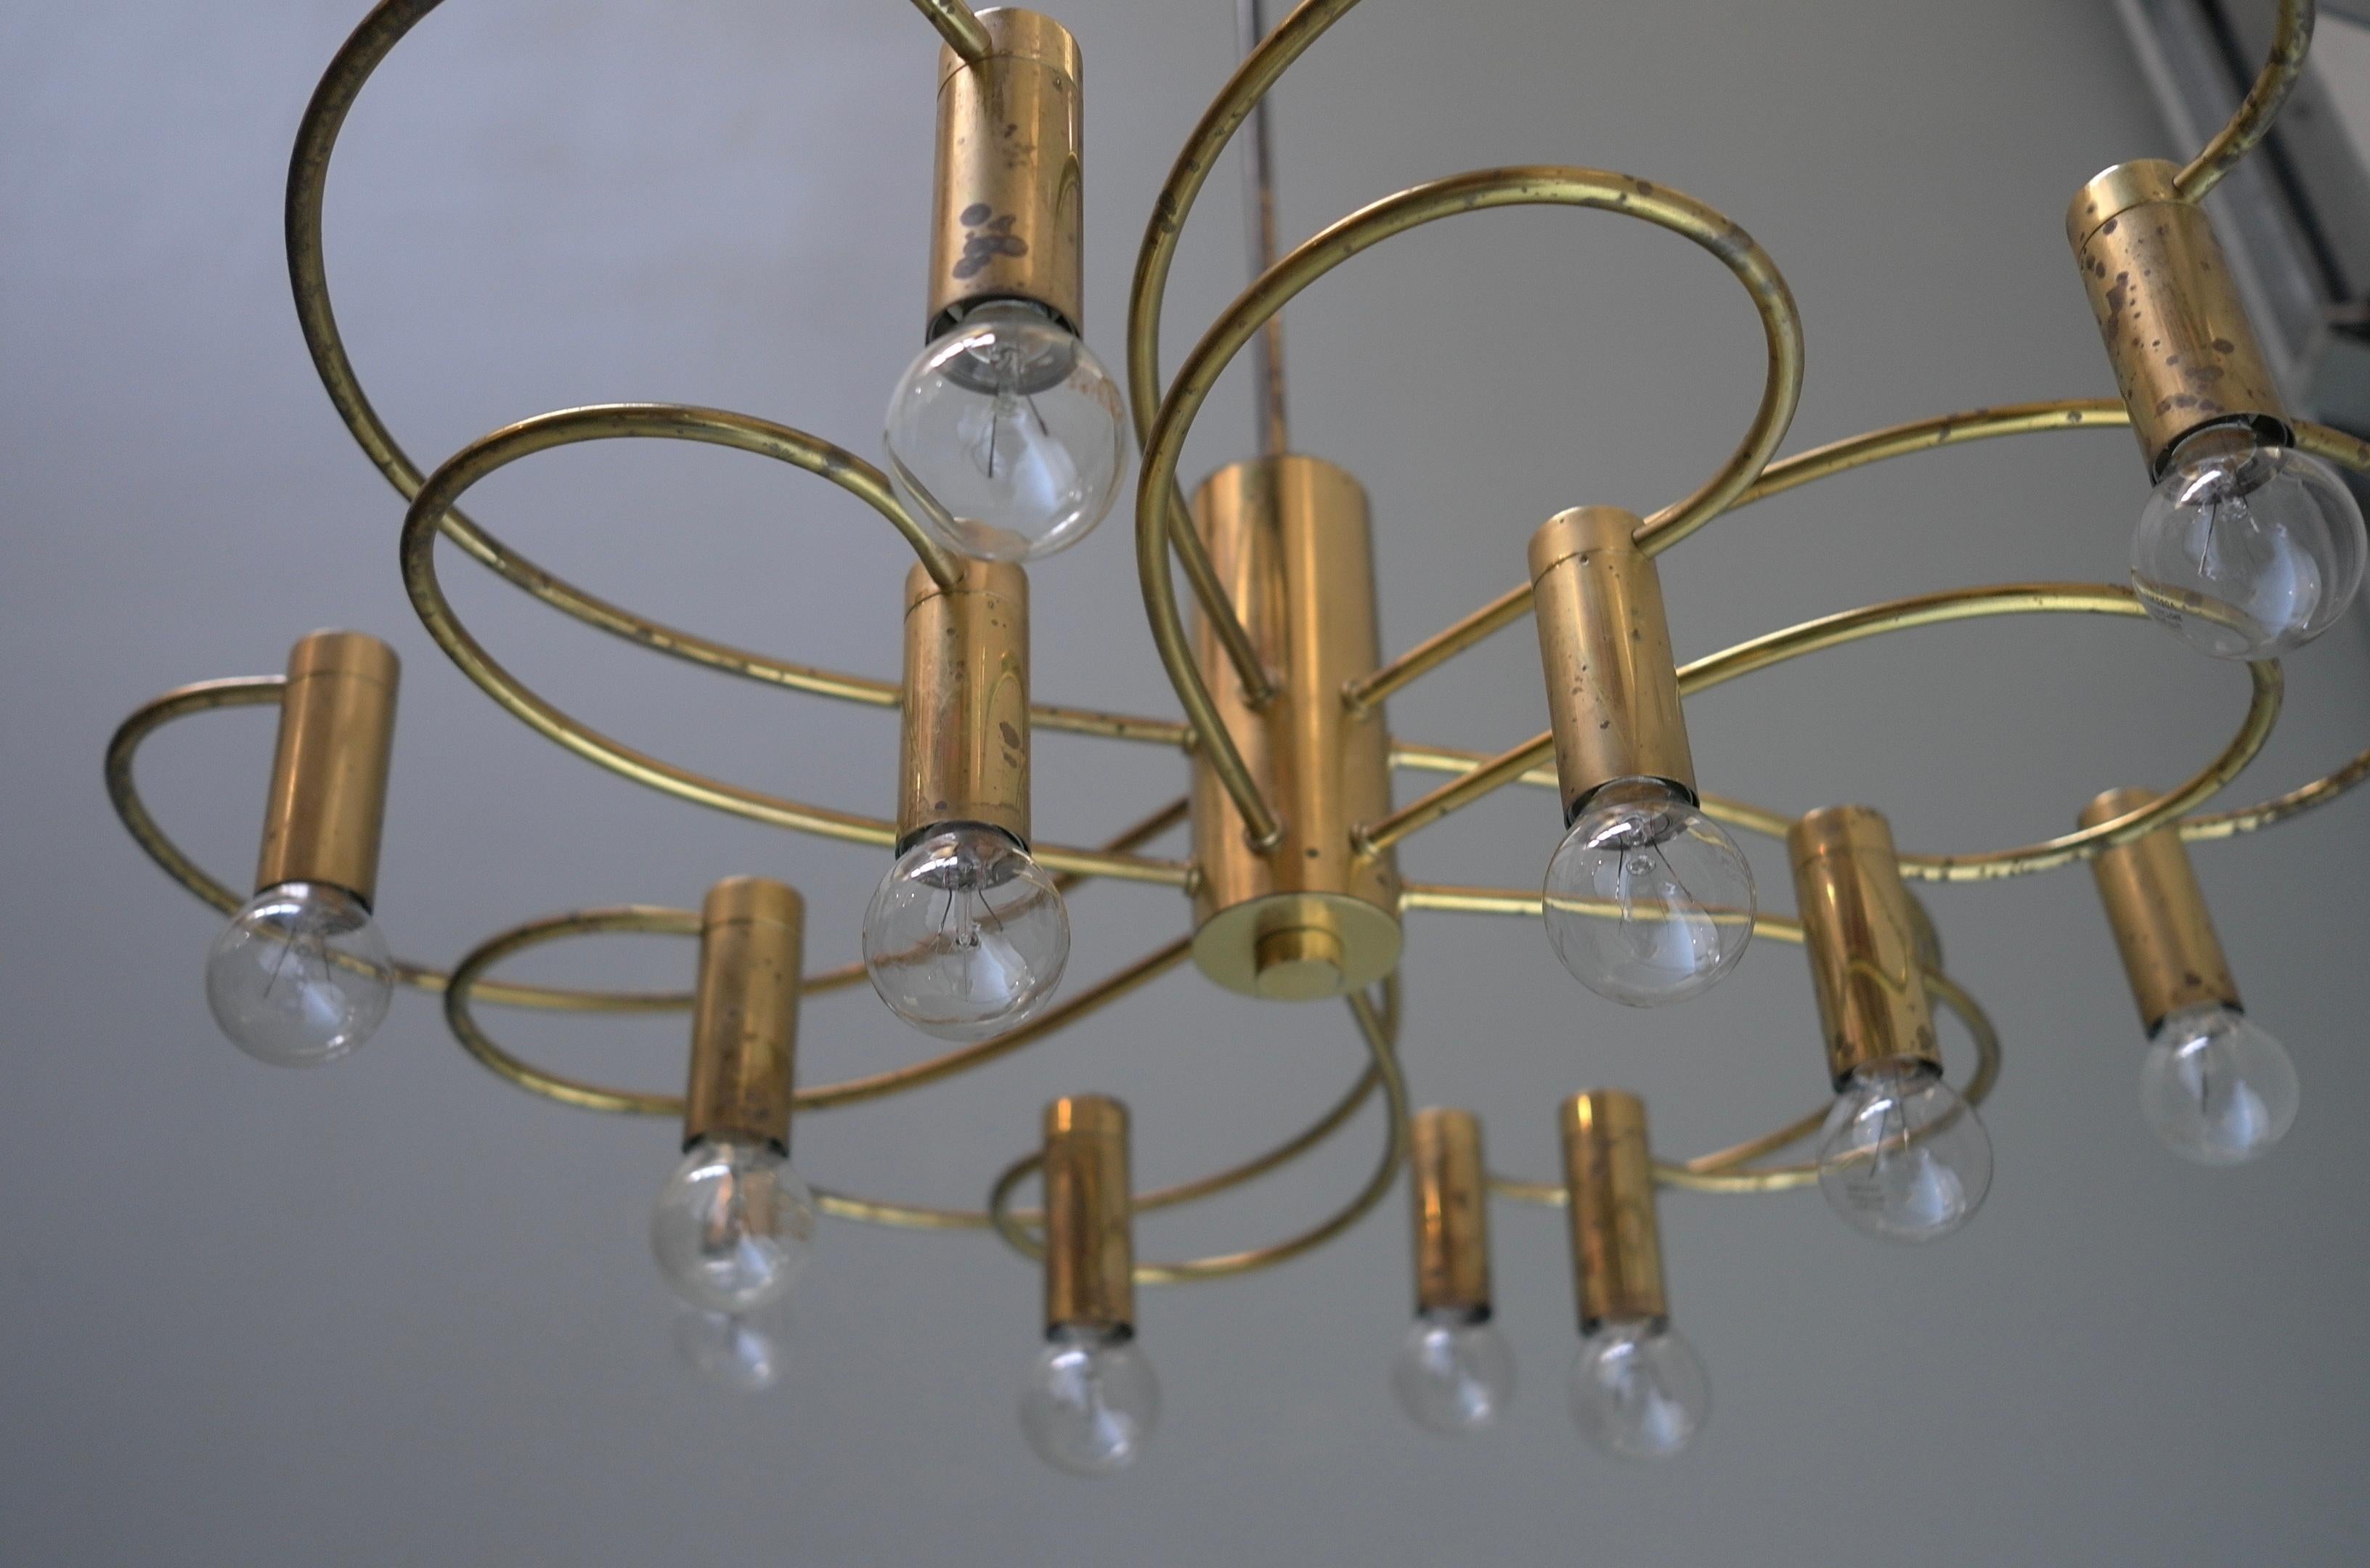 Gaetano Brass Sciolari Zwölf-Licht-Kronleuchter, Italien, 1960er Jahre.

In sehr gutem Vintage-Zustand mit schöner Patina auf dem Messing. Es sind drei Lampen erhältlich, die pro Stück berechnet werden.